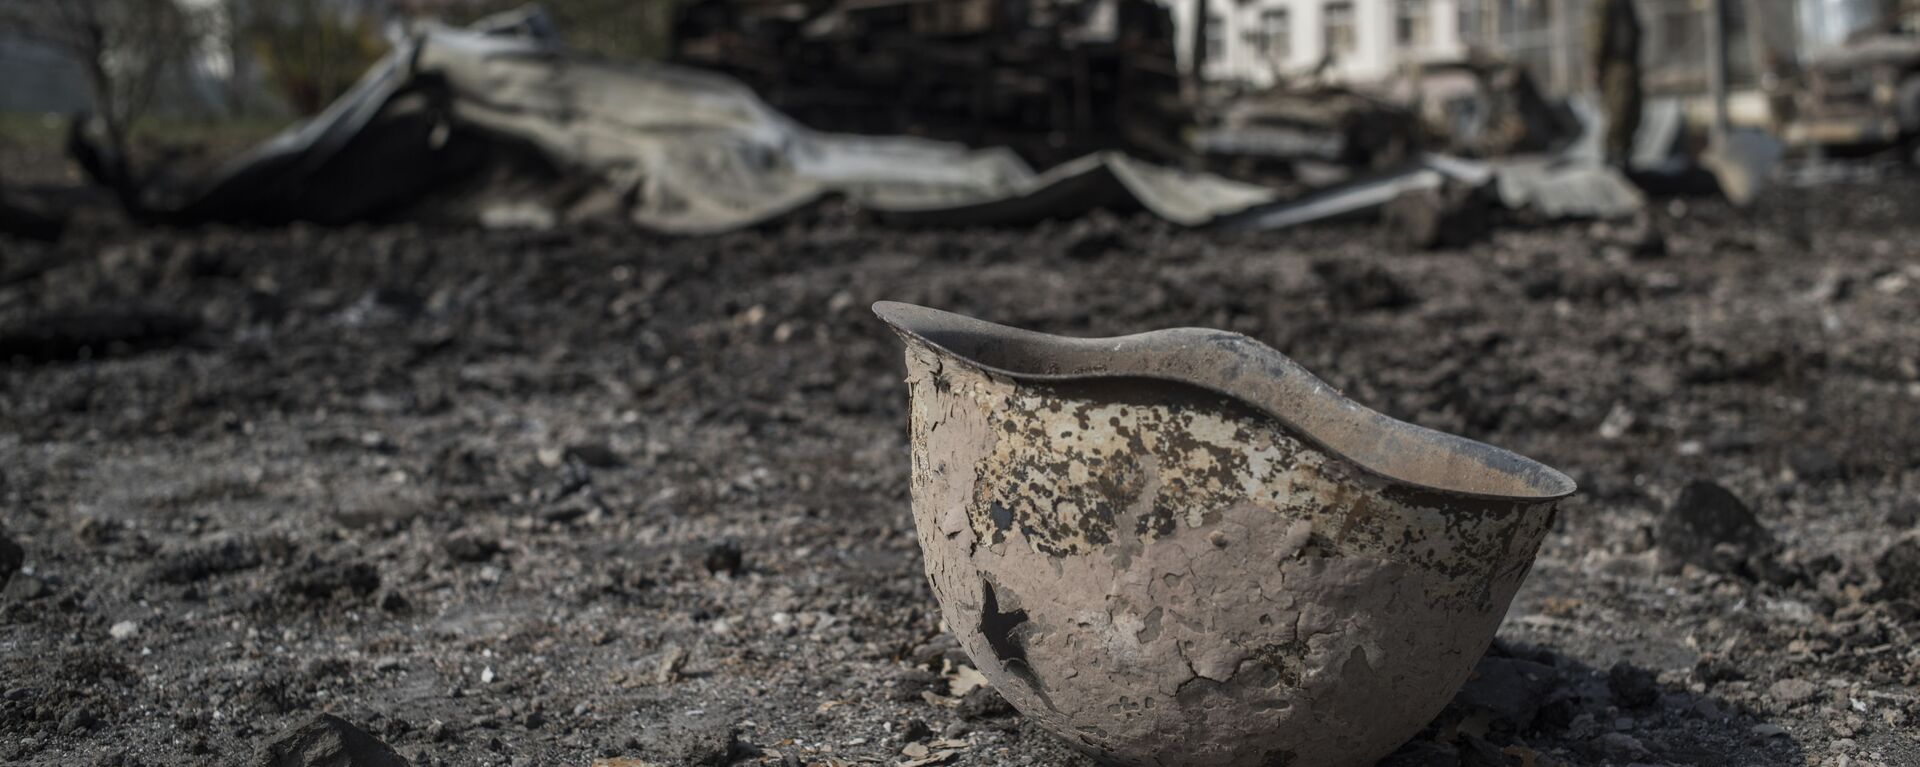 Пробитая каска на территории у госпиталя в Мартакерте, разрушенного в результате обстрела. - Sputnik Արմենիա, 1920, 14.04.2021